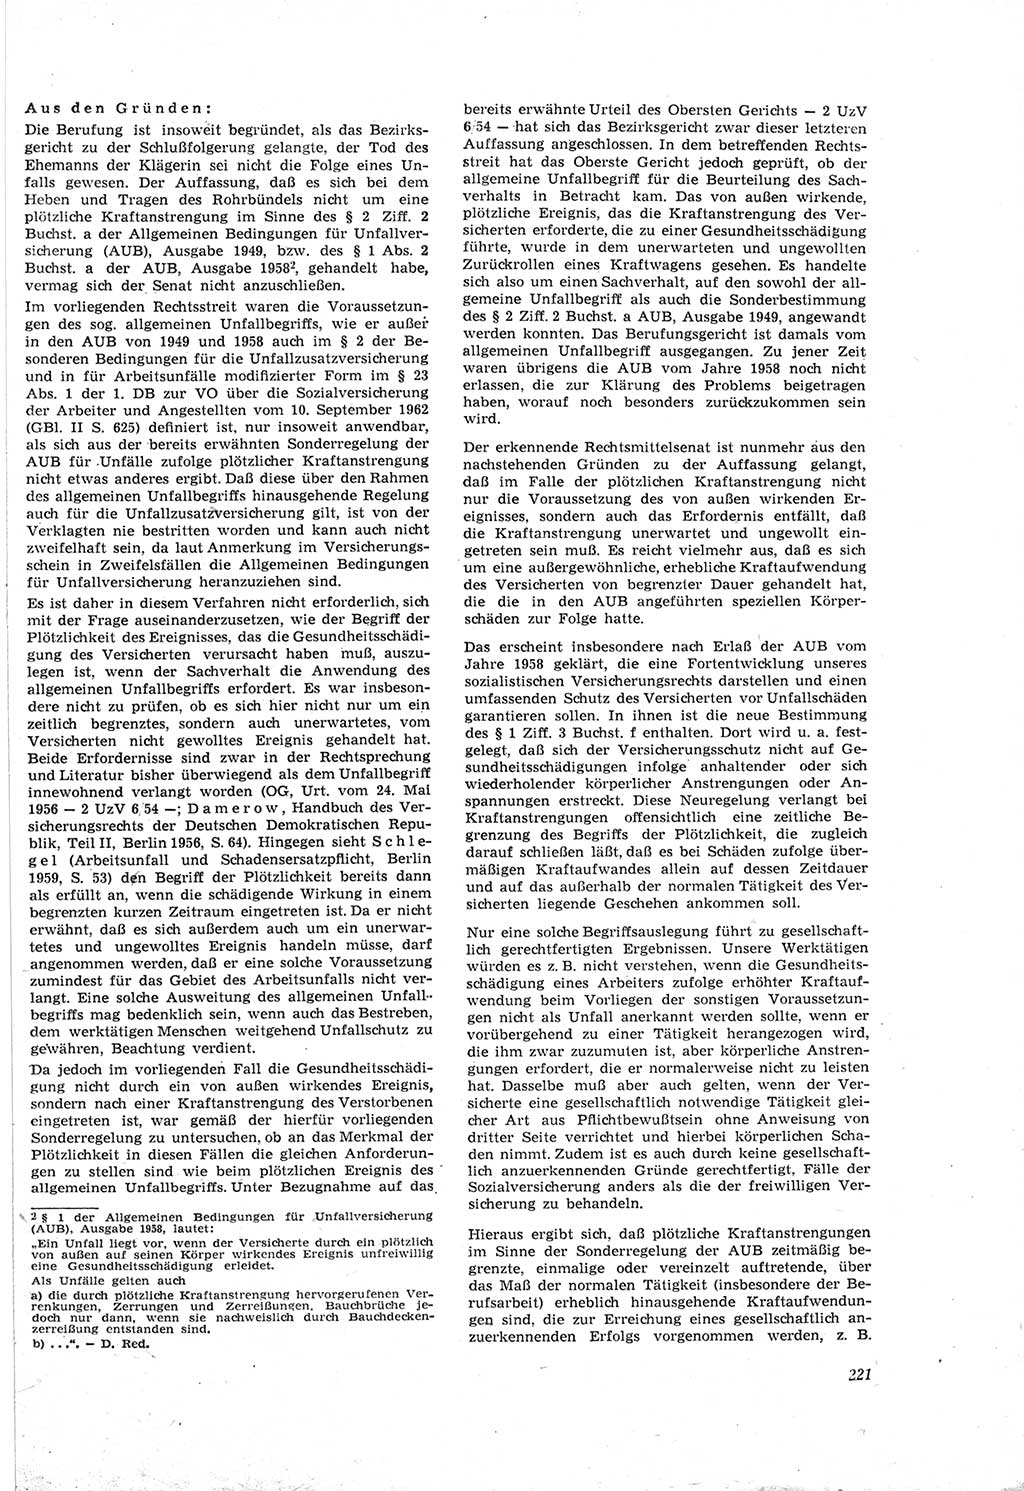 Neue Justiz (NJ), Zeitschrift für Recht und Rechtswissenschaft [Deutsche Demokratische Republik (DDR)], 18. Jahrgang 1964, Seite 221 (NJ DDR 1964, S. 221)